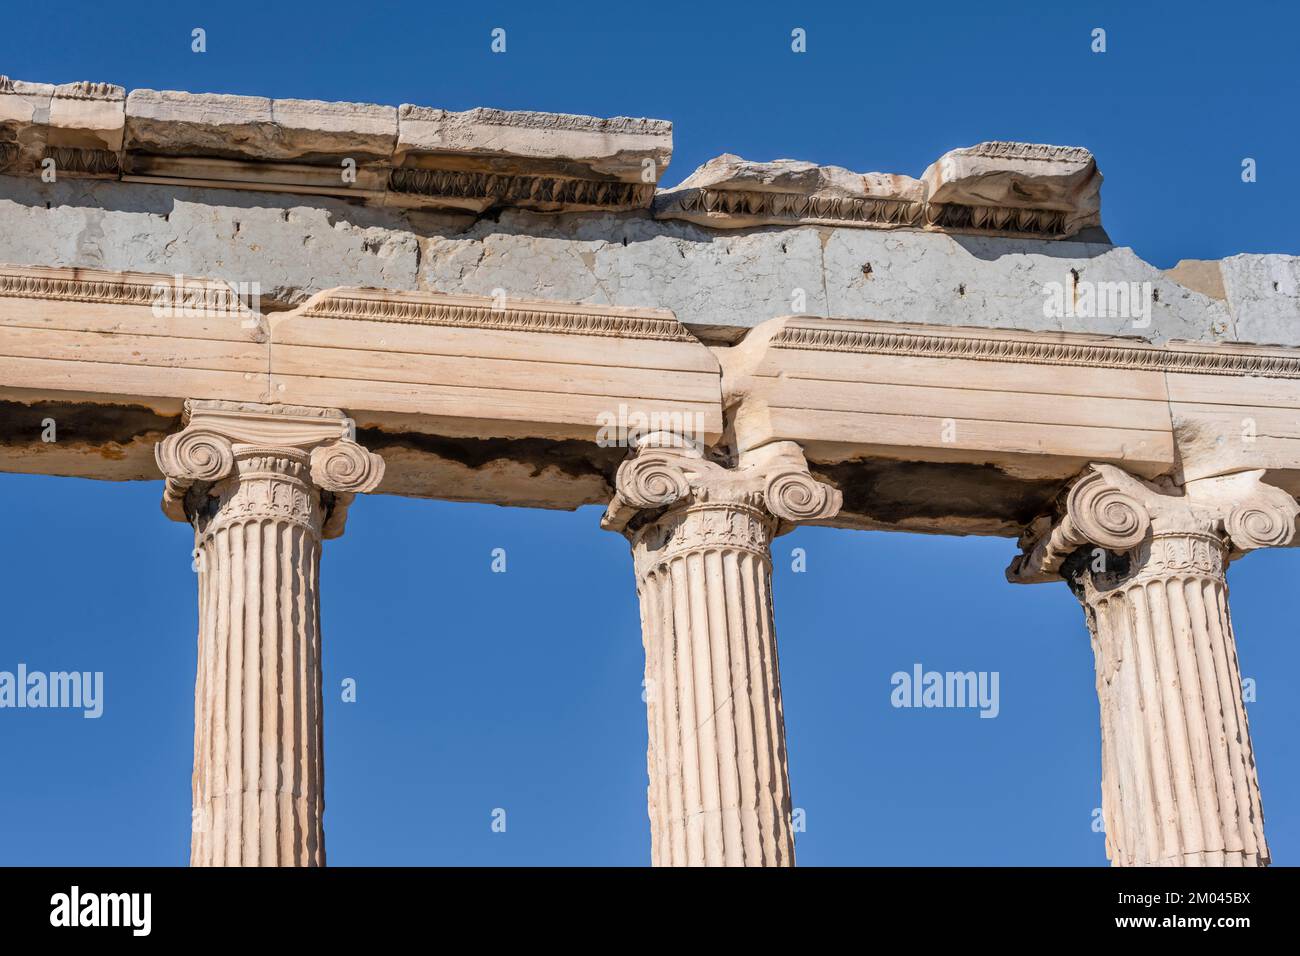 Columns of the Erechtheion Temple, Acropolis, Athens, Greece, Europe Stock Photo